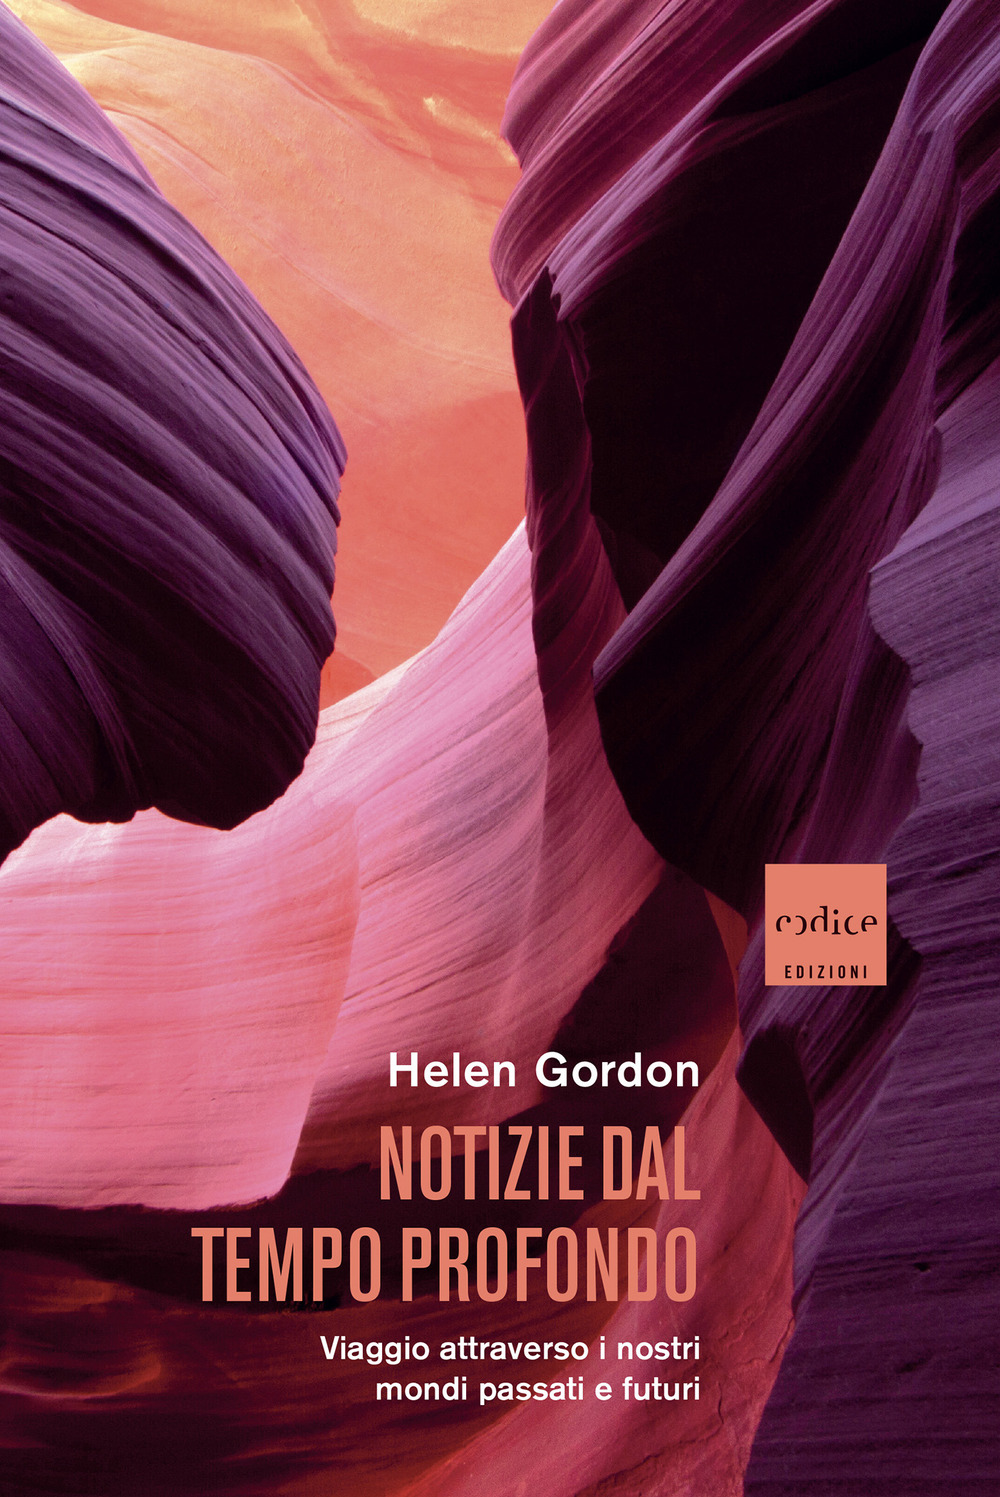 Libri Gordon Helen - Notizie Dal Tempo Profondo NUOVO SIGILLATO, EDIZIONE DEL 23/03/2022 SUBITO DISPONIBILE